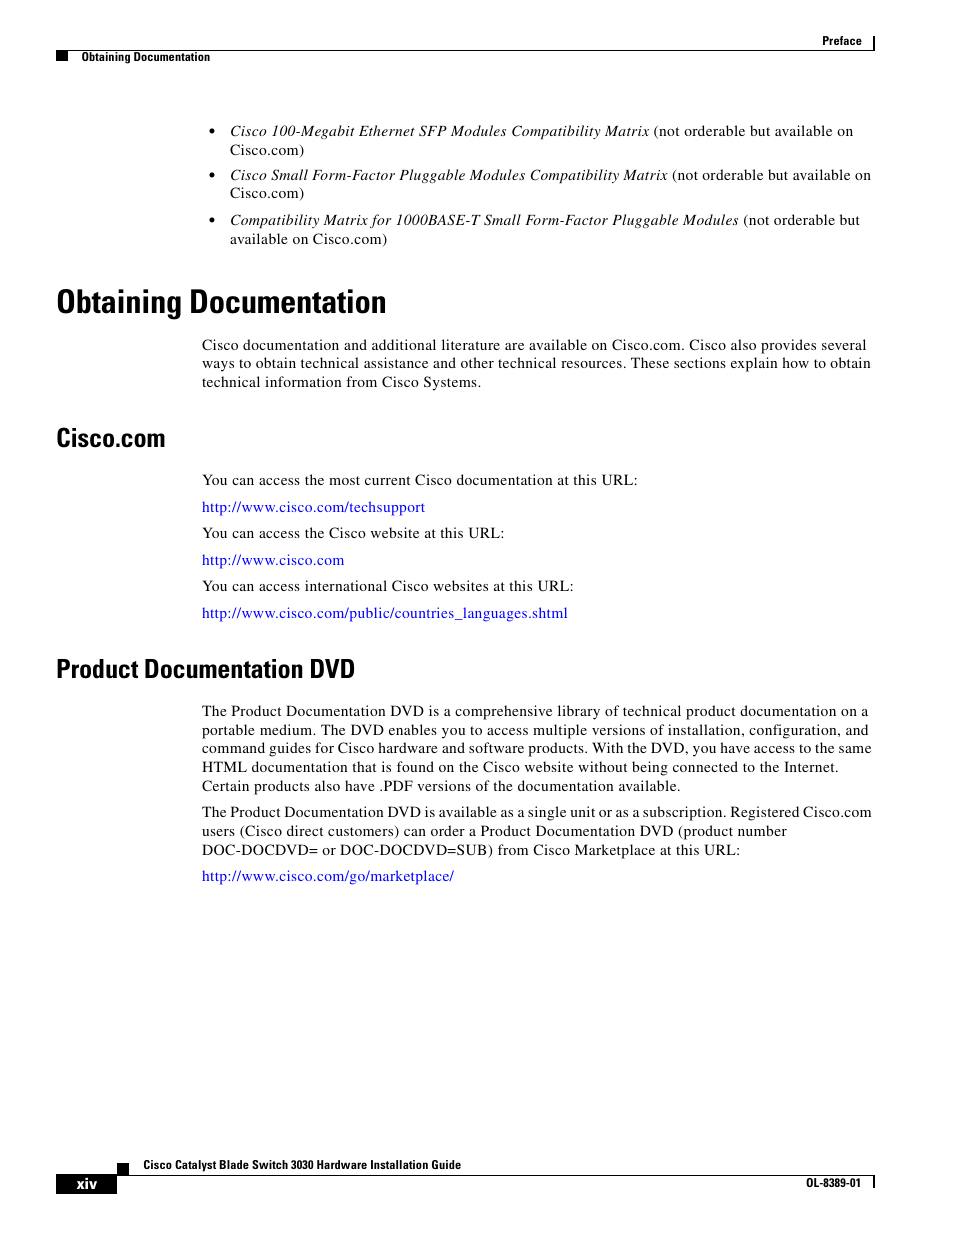 Obtaining documentation, Cisco.com, Product documentation dvd | Cisco 3030 User Manual | Page 14 / 72